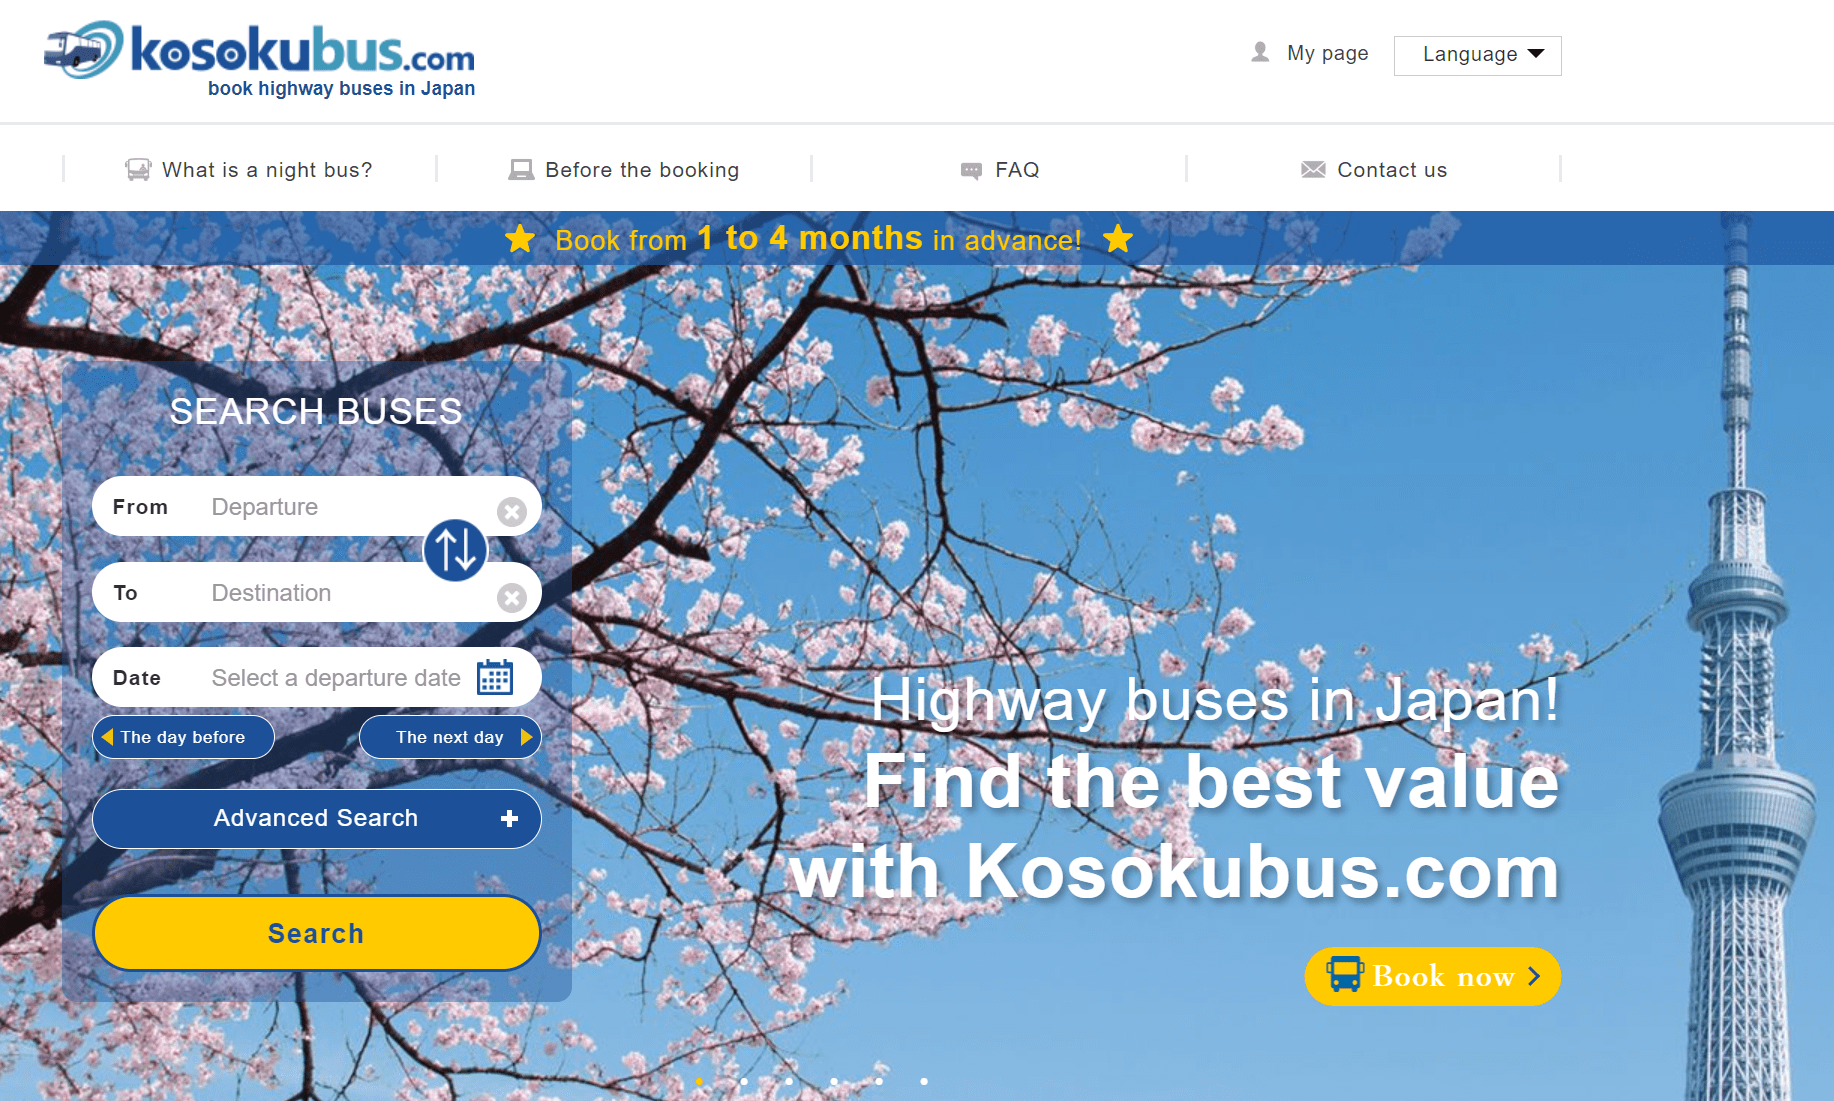 kosokubus.com